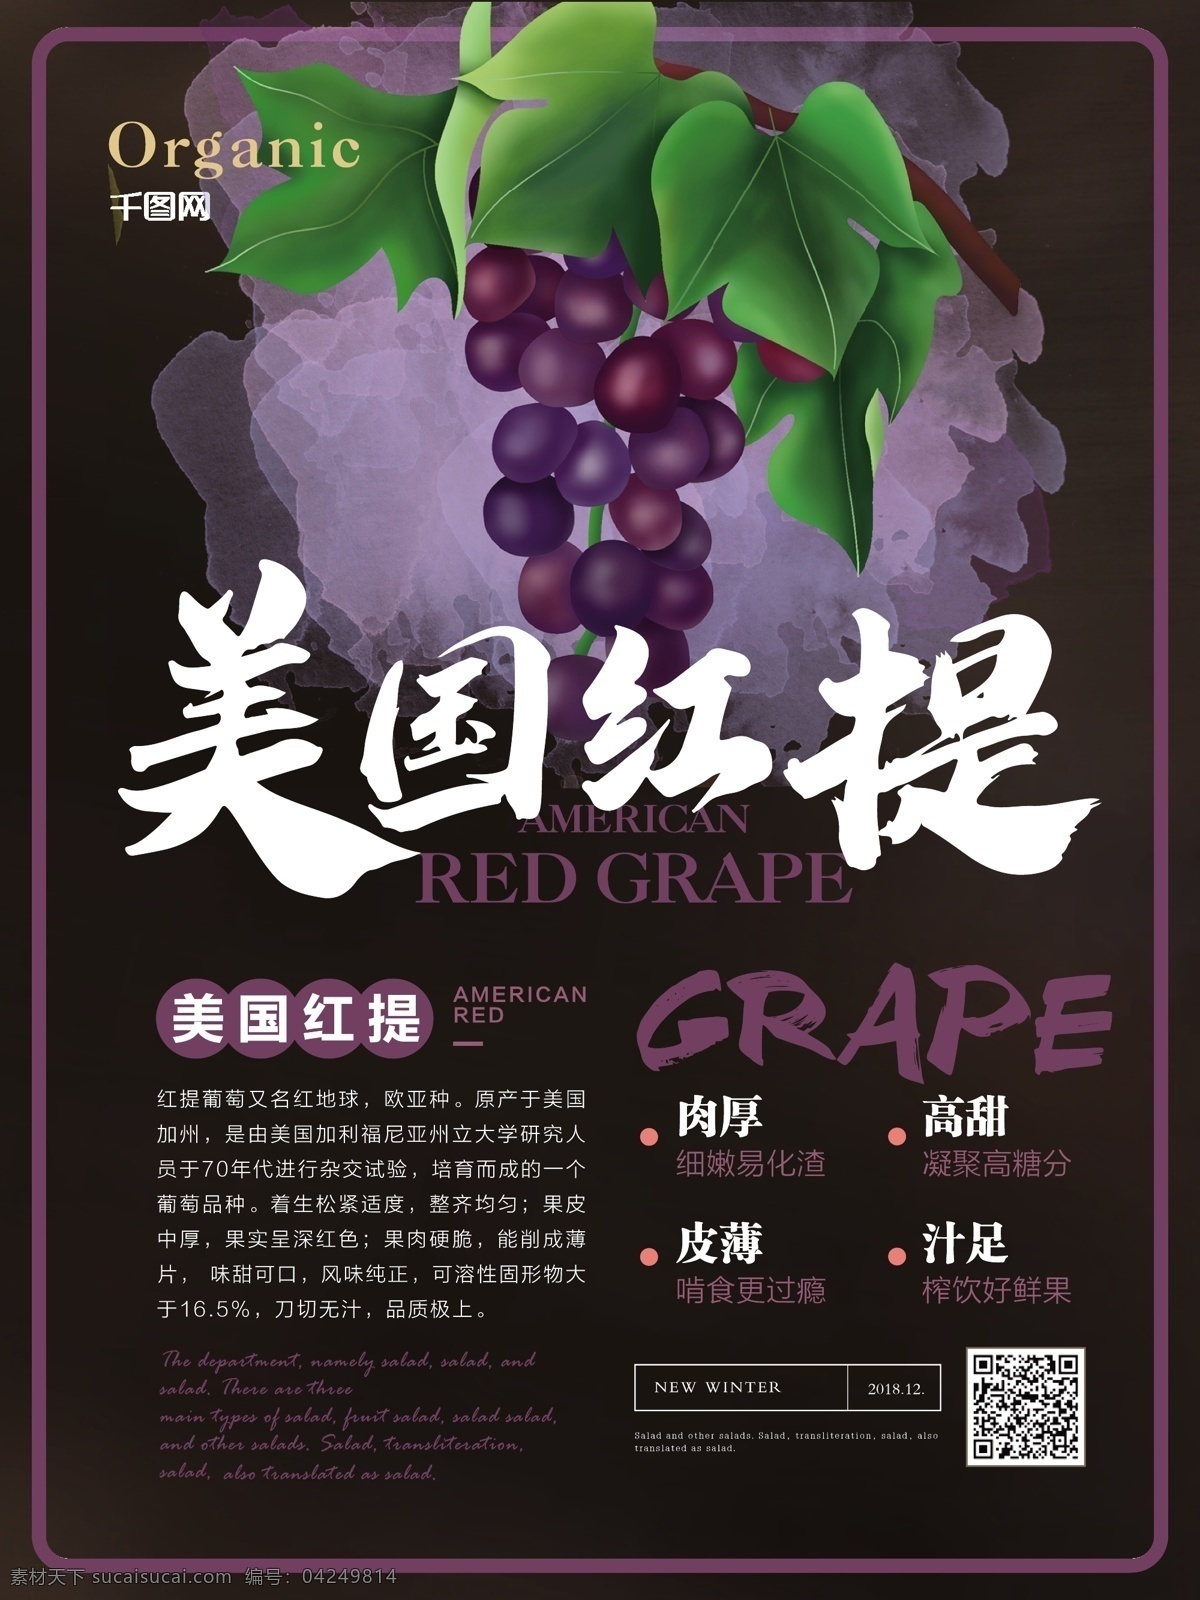 简约 风 美国 红提 水果 海报 简约风 美国红提 主题 葡萄 进口 有机水果 美食 健康 宣传